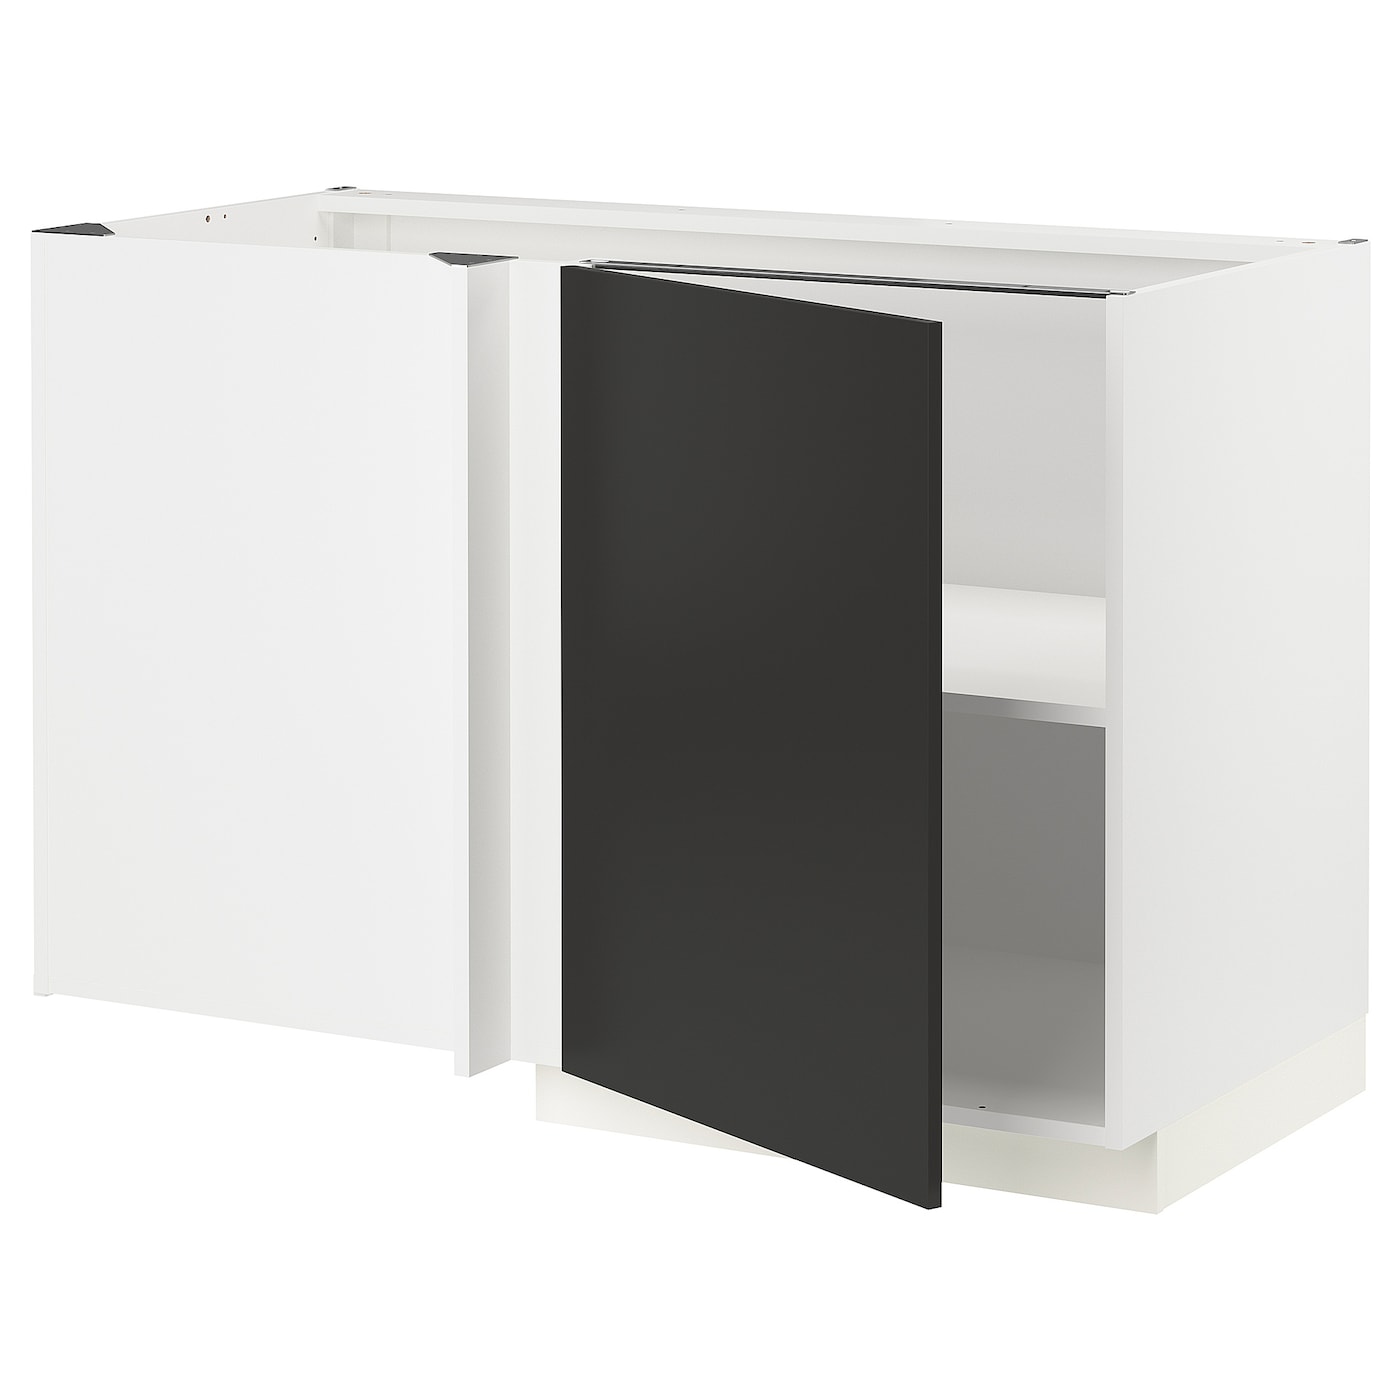 Напольный шкаф - METOD IKEA/ МЕТОД ИКЕА,  128х68 см, белый/черный